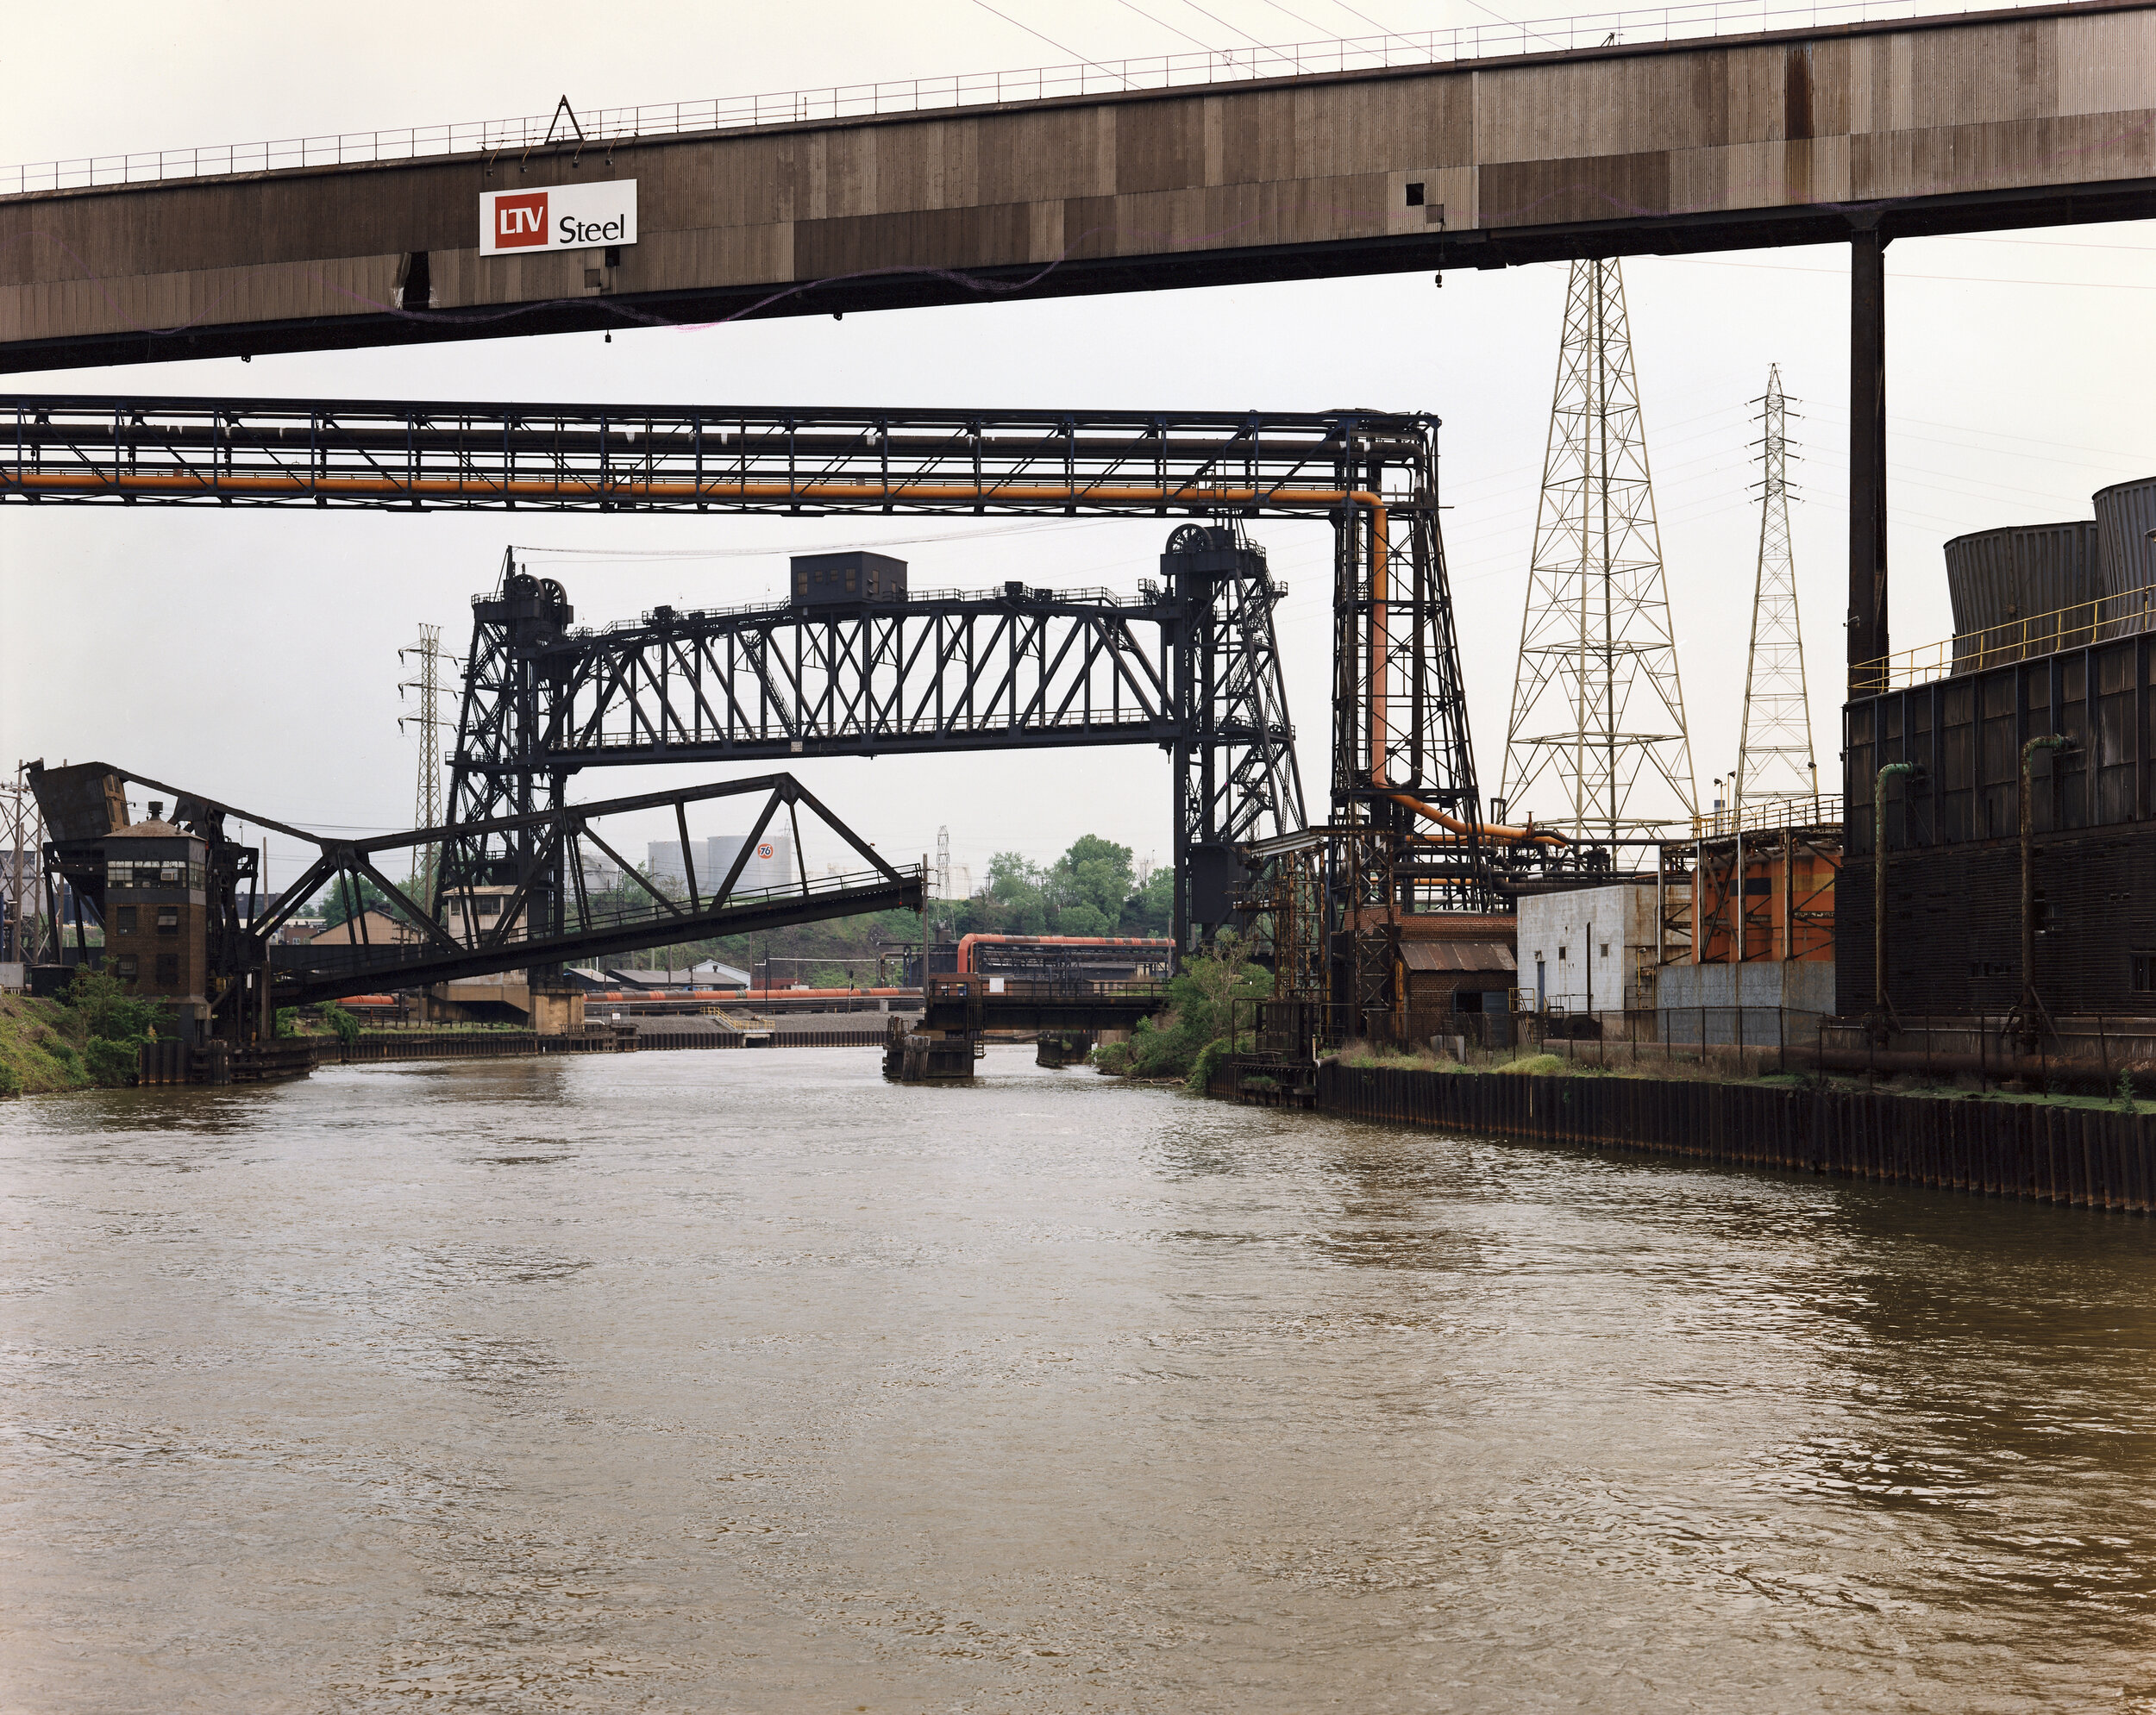 Cuyahoga River, Cleveland, Ohio, May 1994